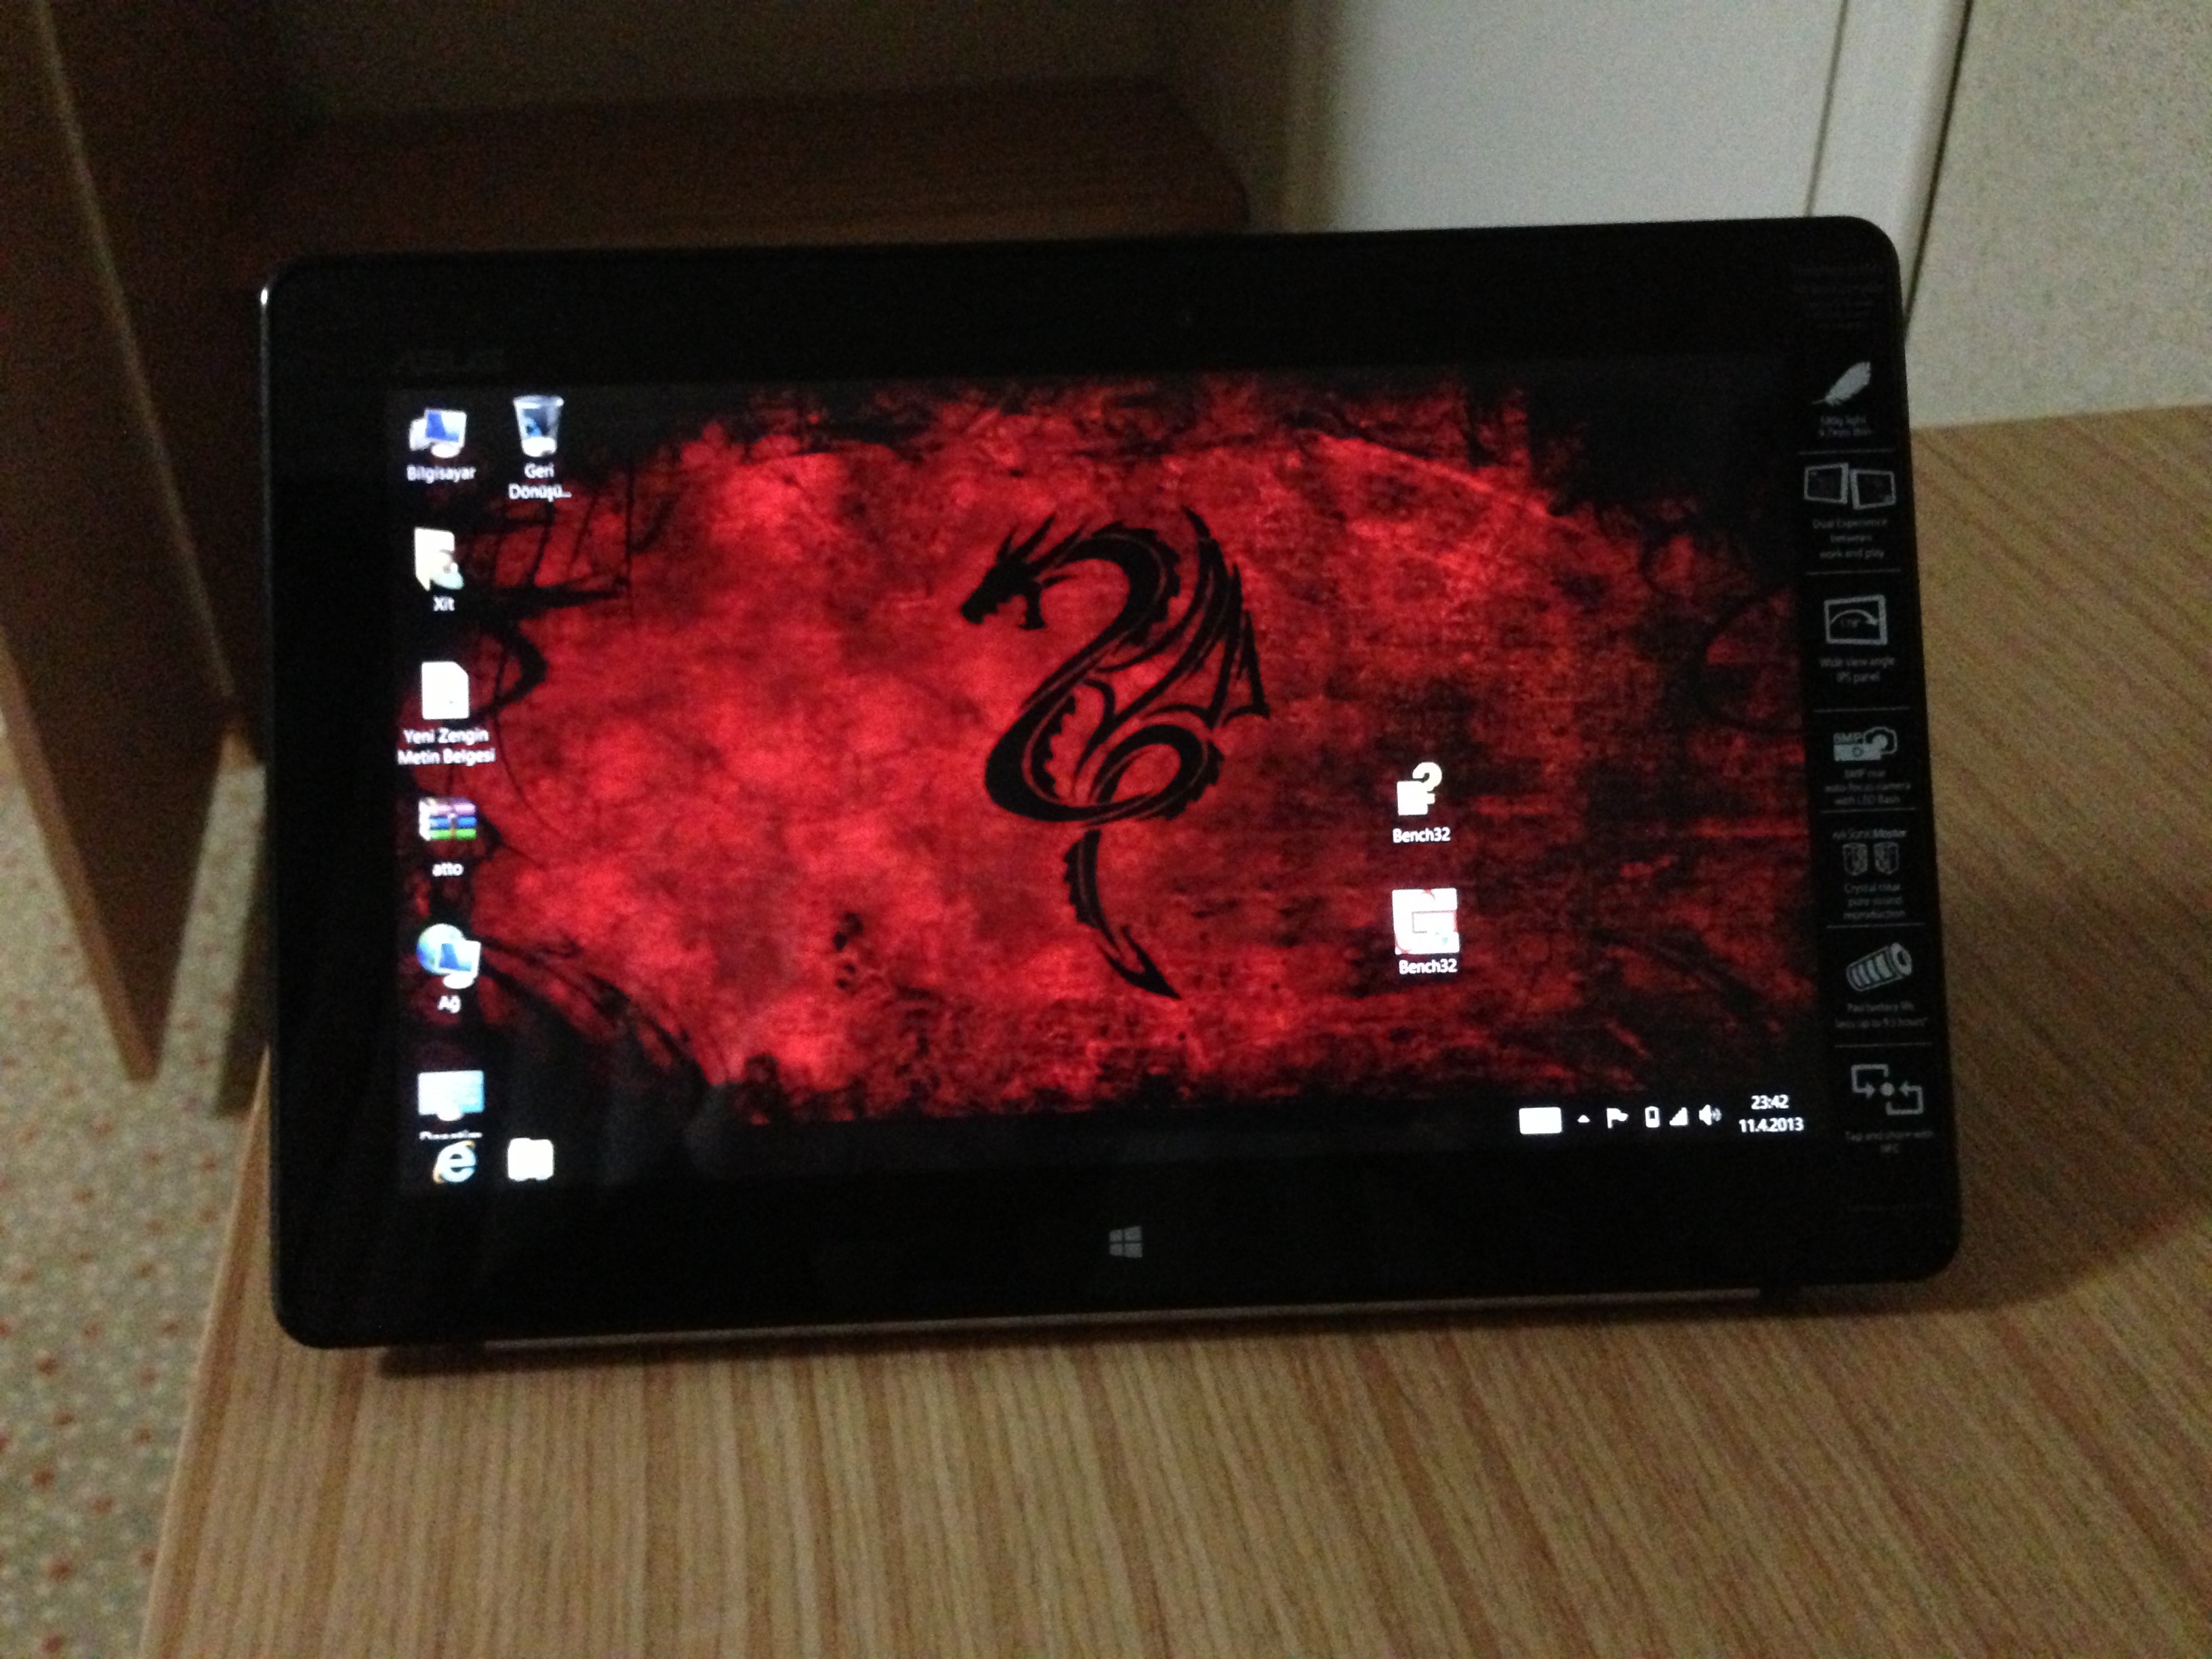  Windows 8 Tablet İnceleme !!!  Asus Vivotab Smart ME400C